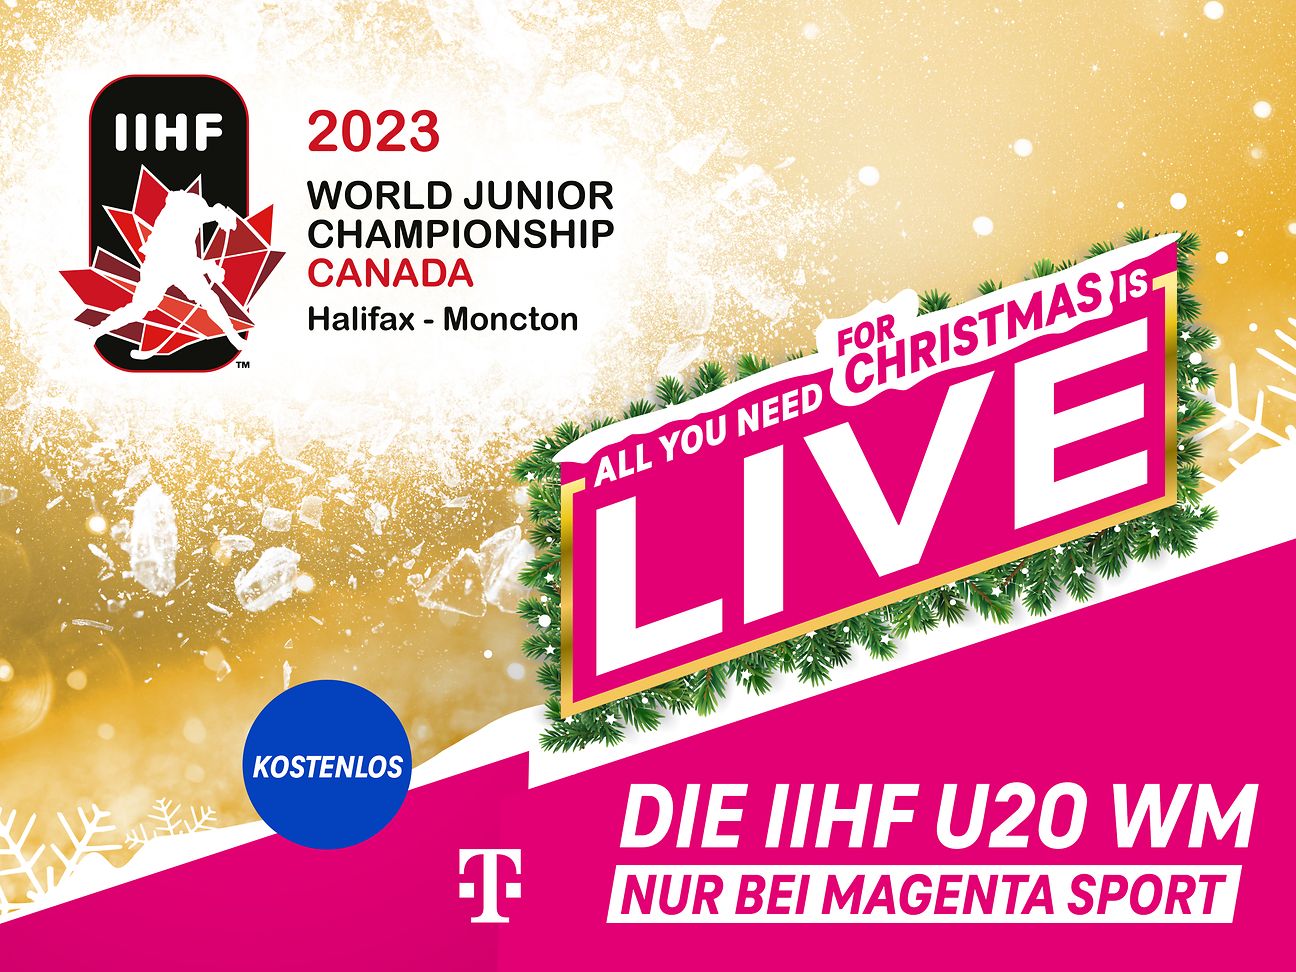 U20 WM Eishockey exklusiv, live und kostenlos bei MagentaSport Deutsche Telekom